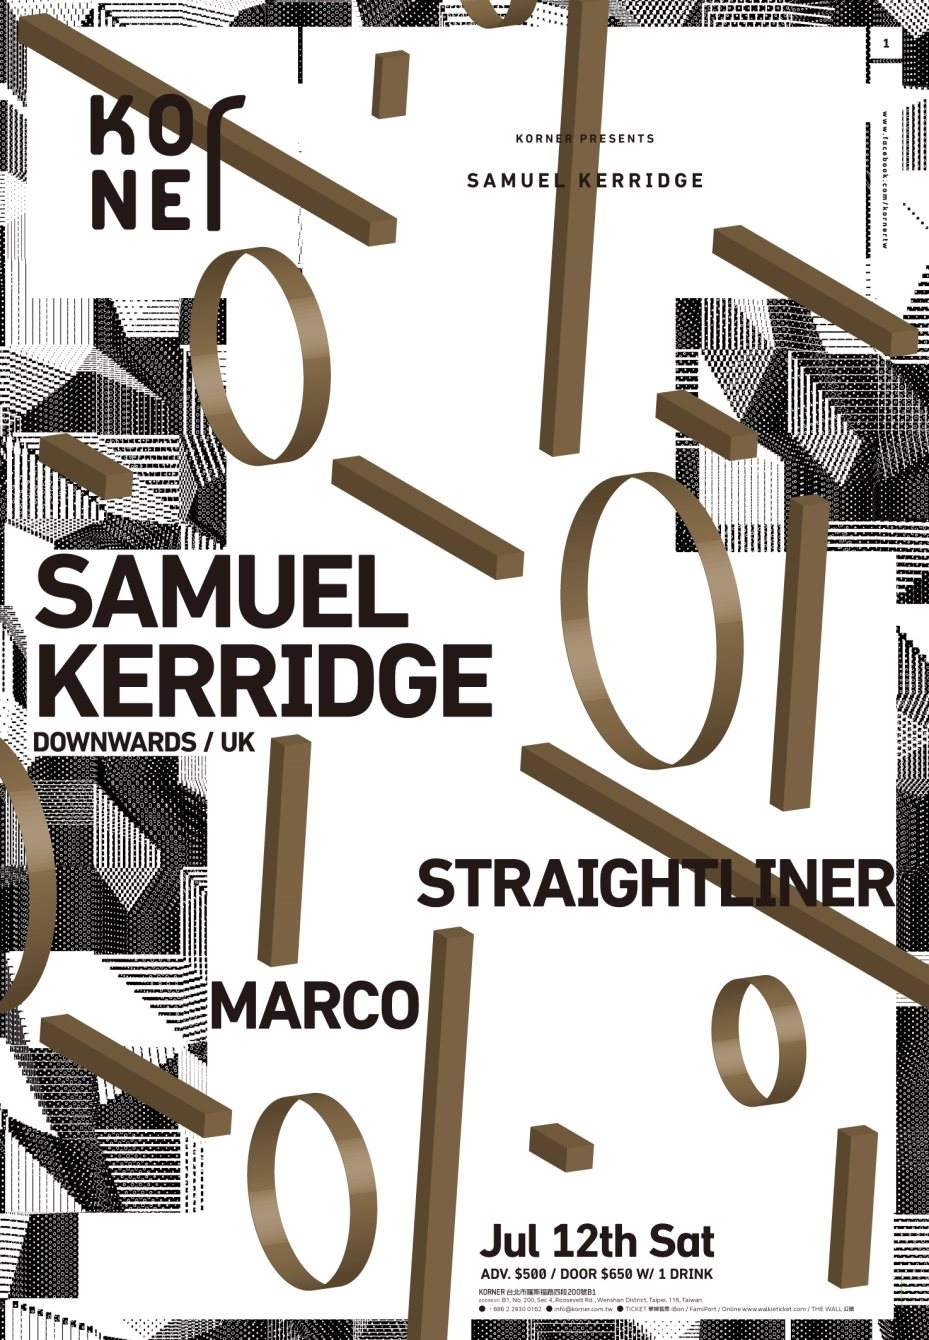 Korner presents Samuel Kerridge - フライヤー表